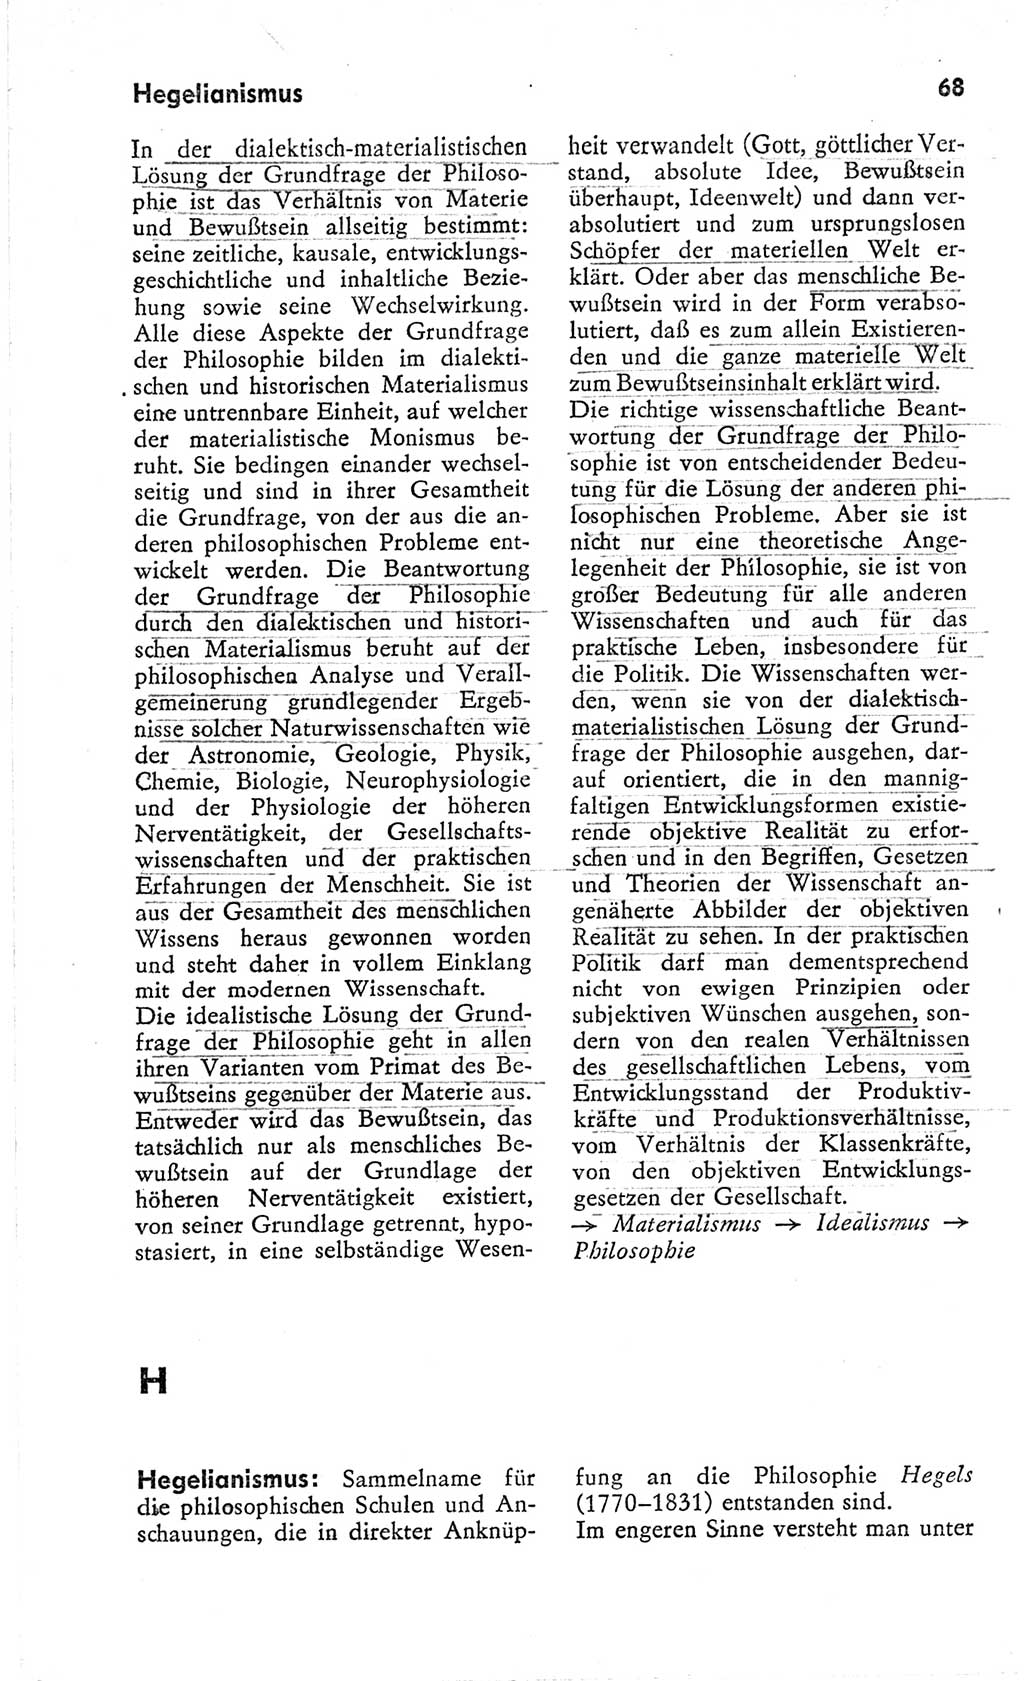 Kleines Wörterbuch der marxistisch-leninistischen Philosophie [Deutsche Demokratische Republik (DDR)] 1966, Seite 68 (Kl. Wb. ML Phil. DDR 1966, S. 68)